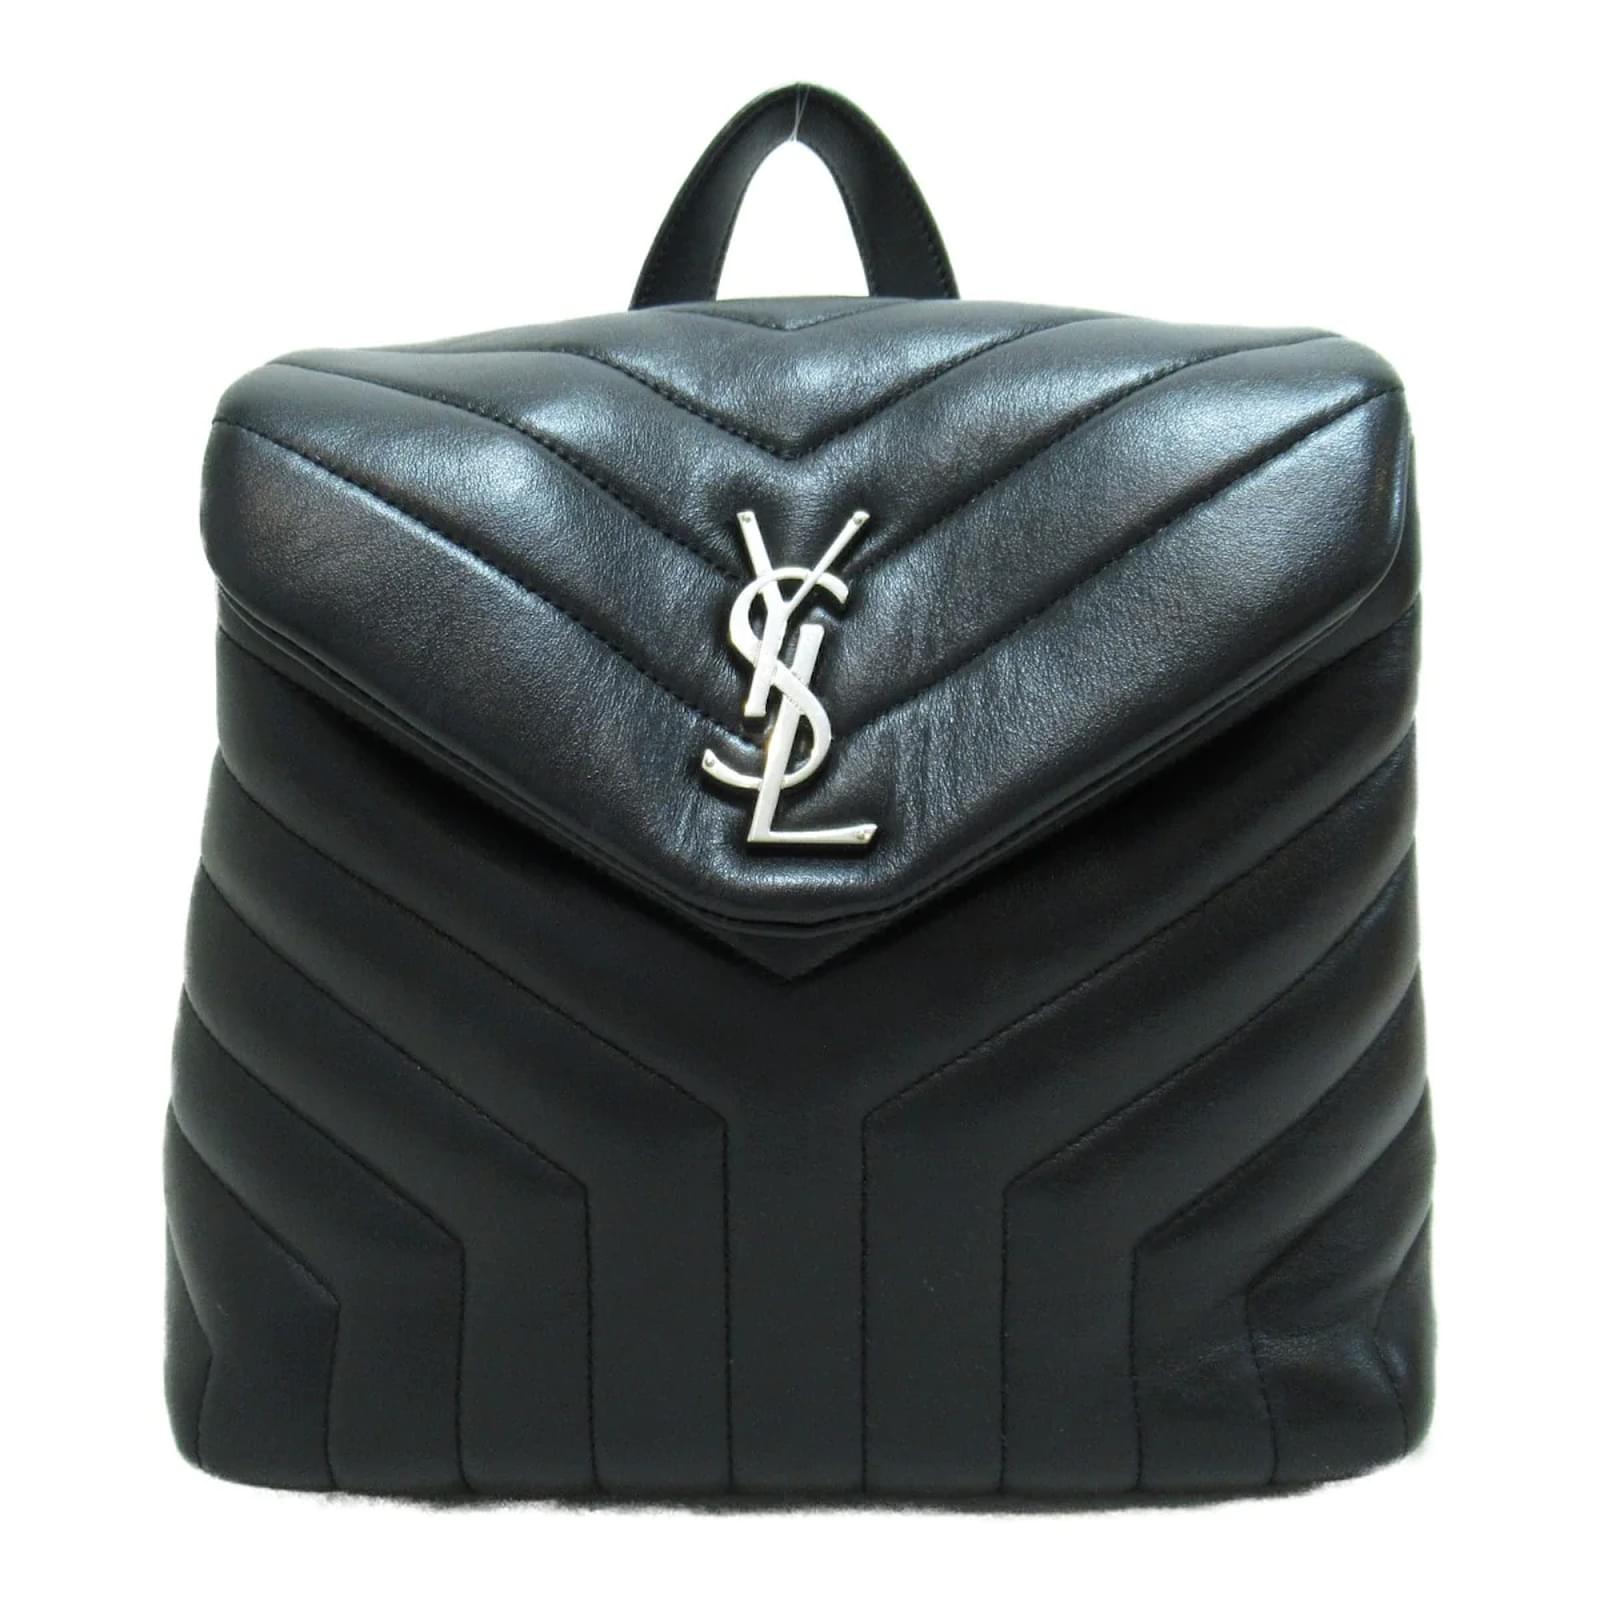 Yves Saint Laurent Loulou Puffer Medium Bag, Black